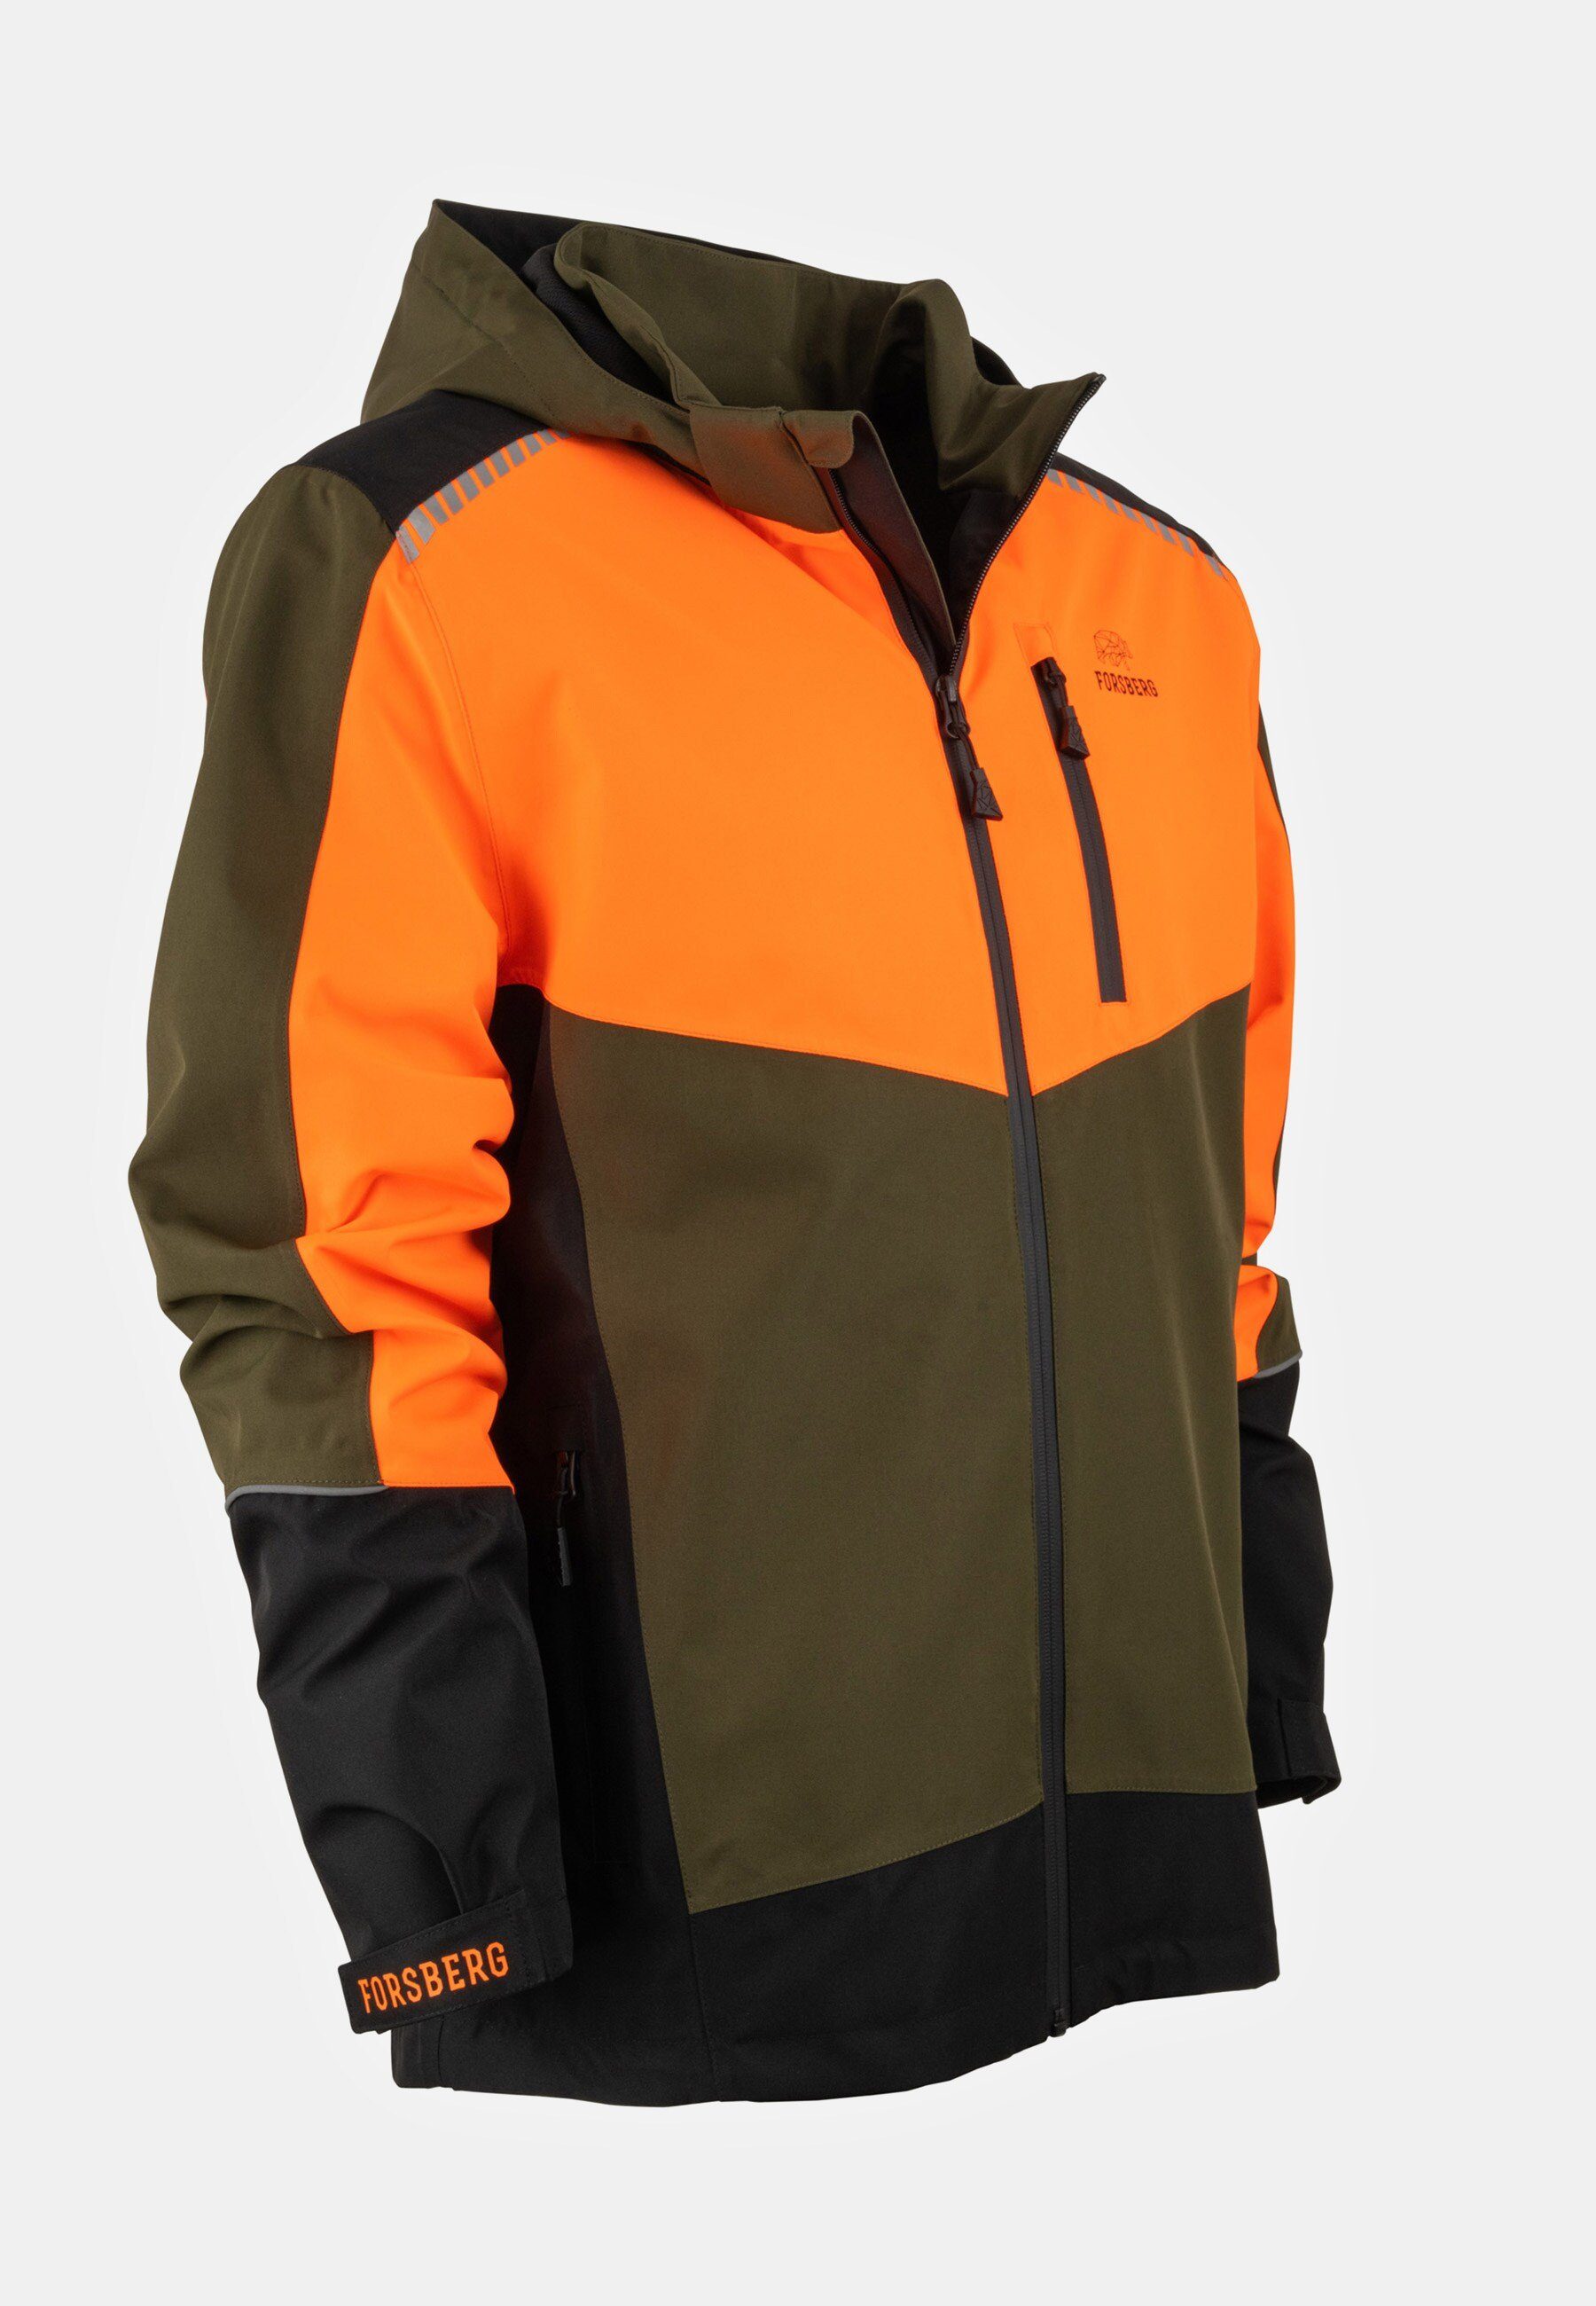 FORSBERG Fieldjacket Skogar neon orange Allwetter-Funktionsjacke